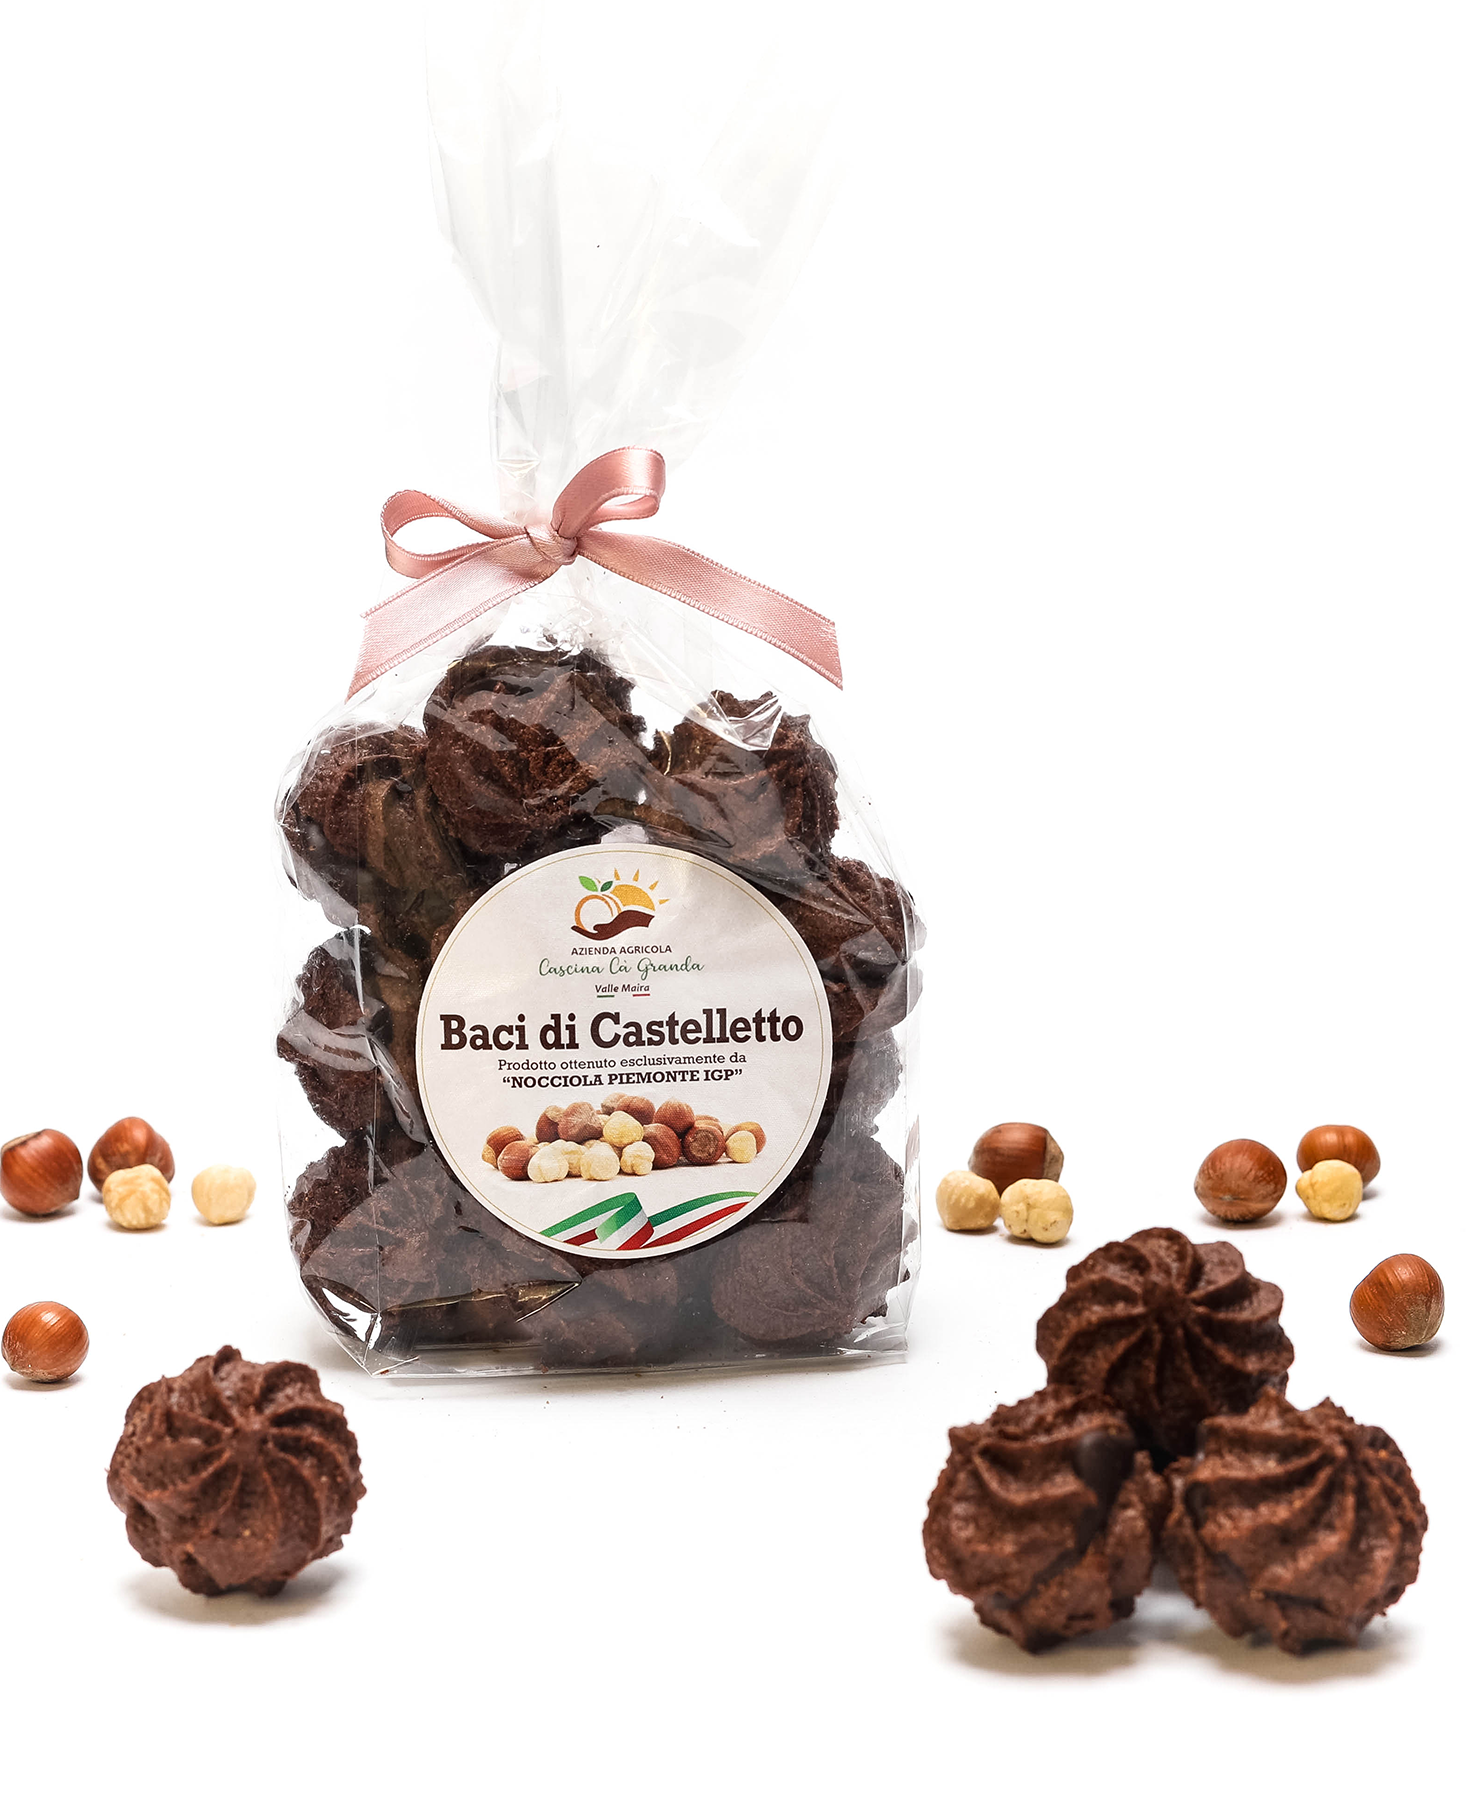 Baci di Castelletto - Biscotti con Nocciole Piemonte IGP e Cacao - Azienda agricola Cascina Cà Granda